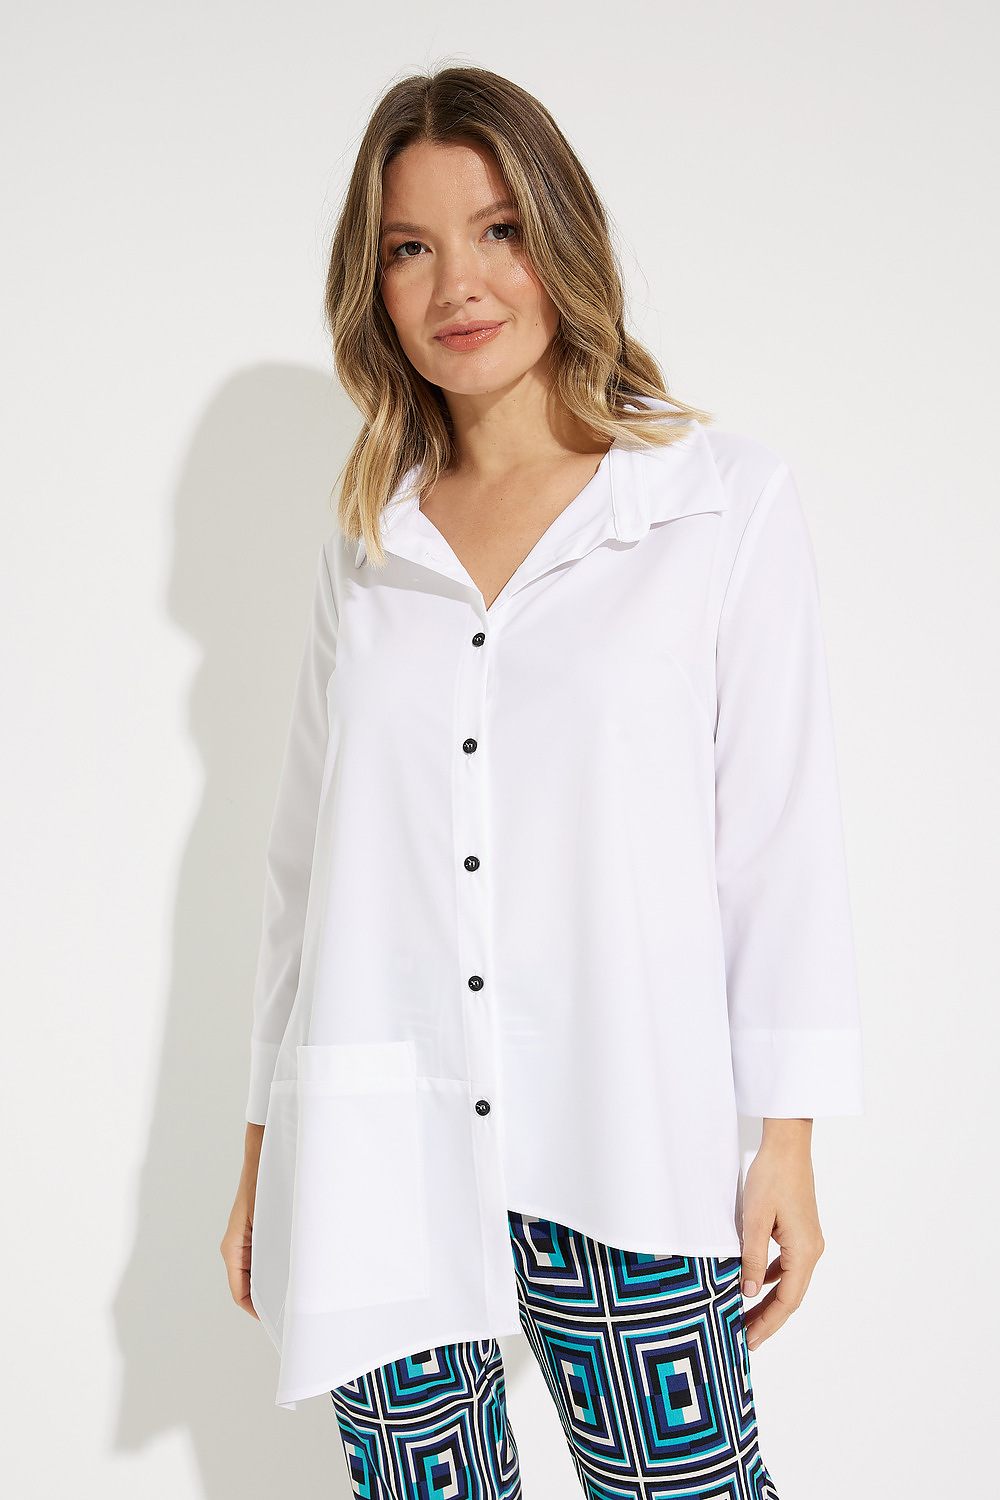 Asymmetrical blouse Style 231004. Optic White